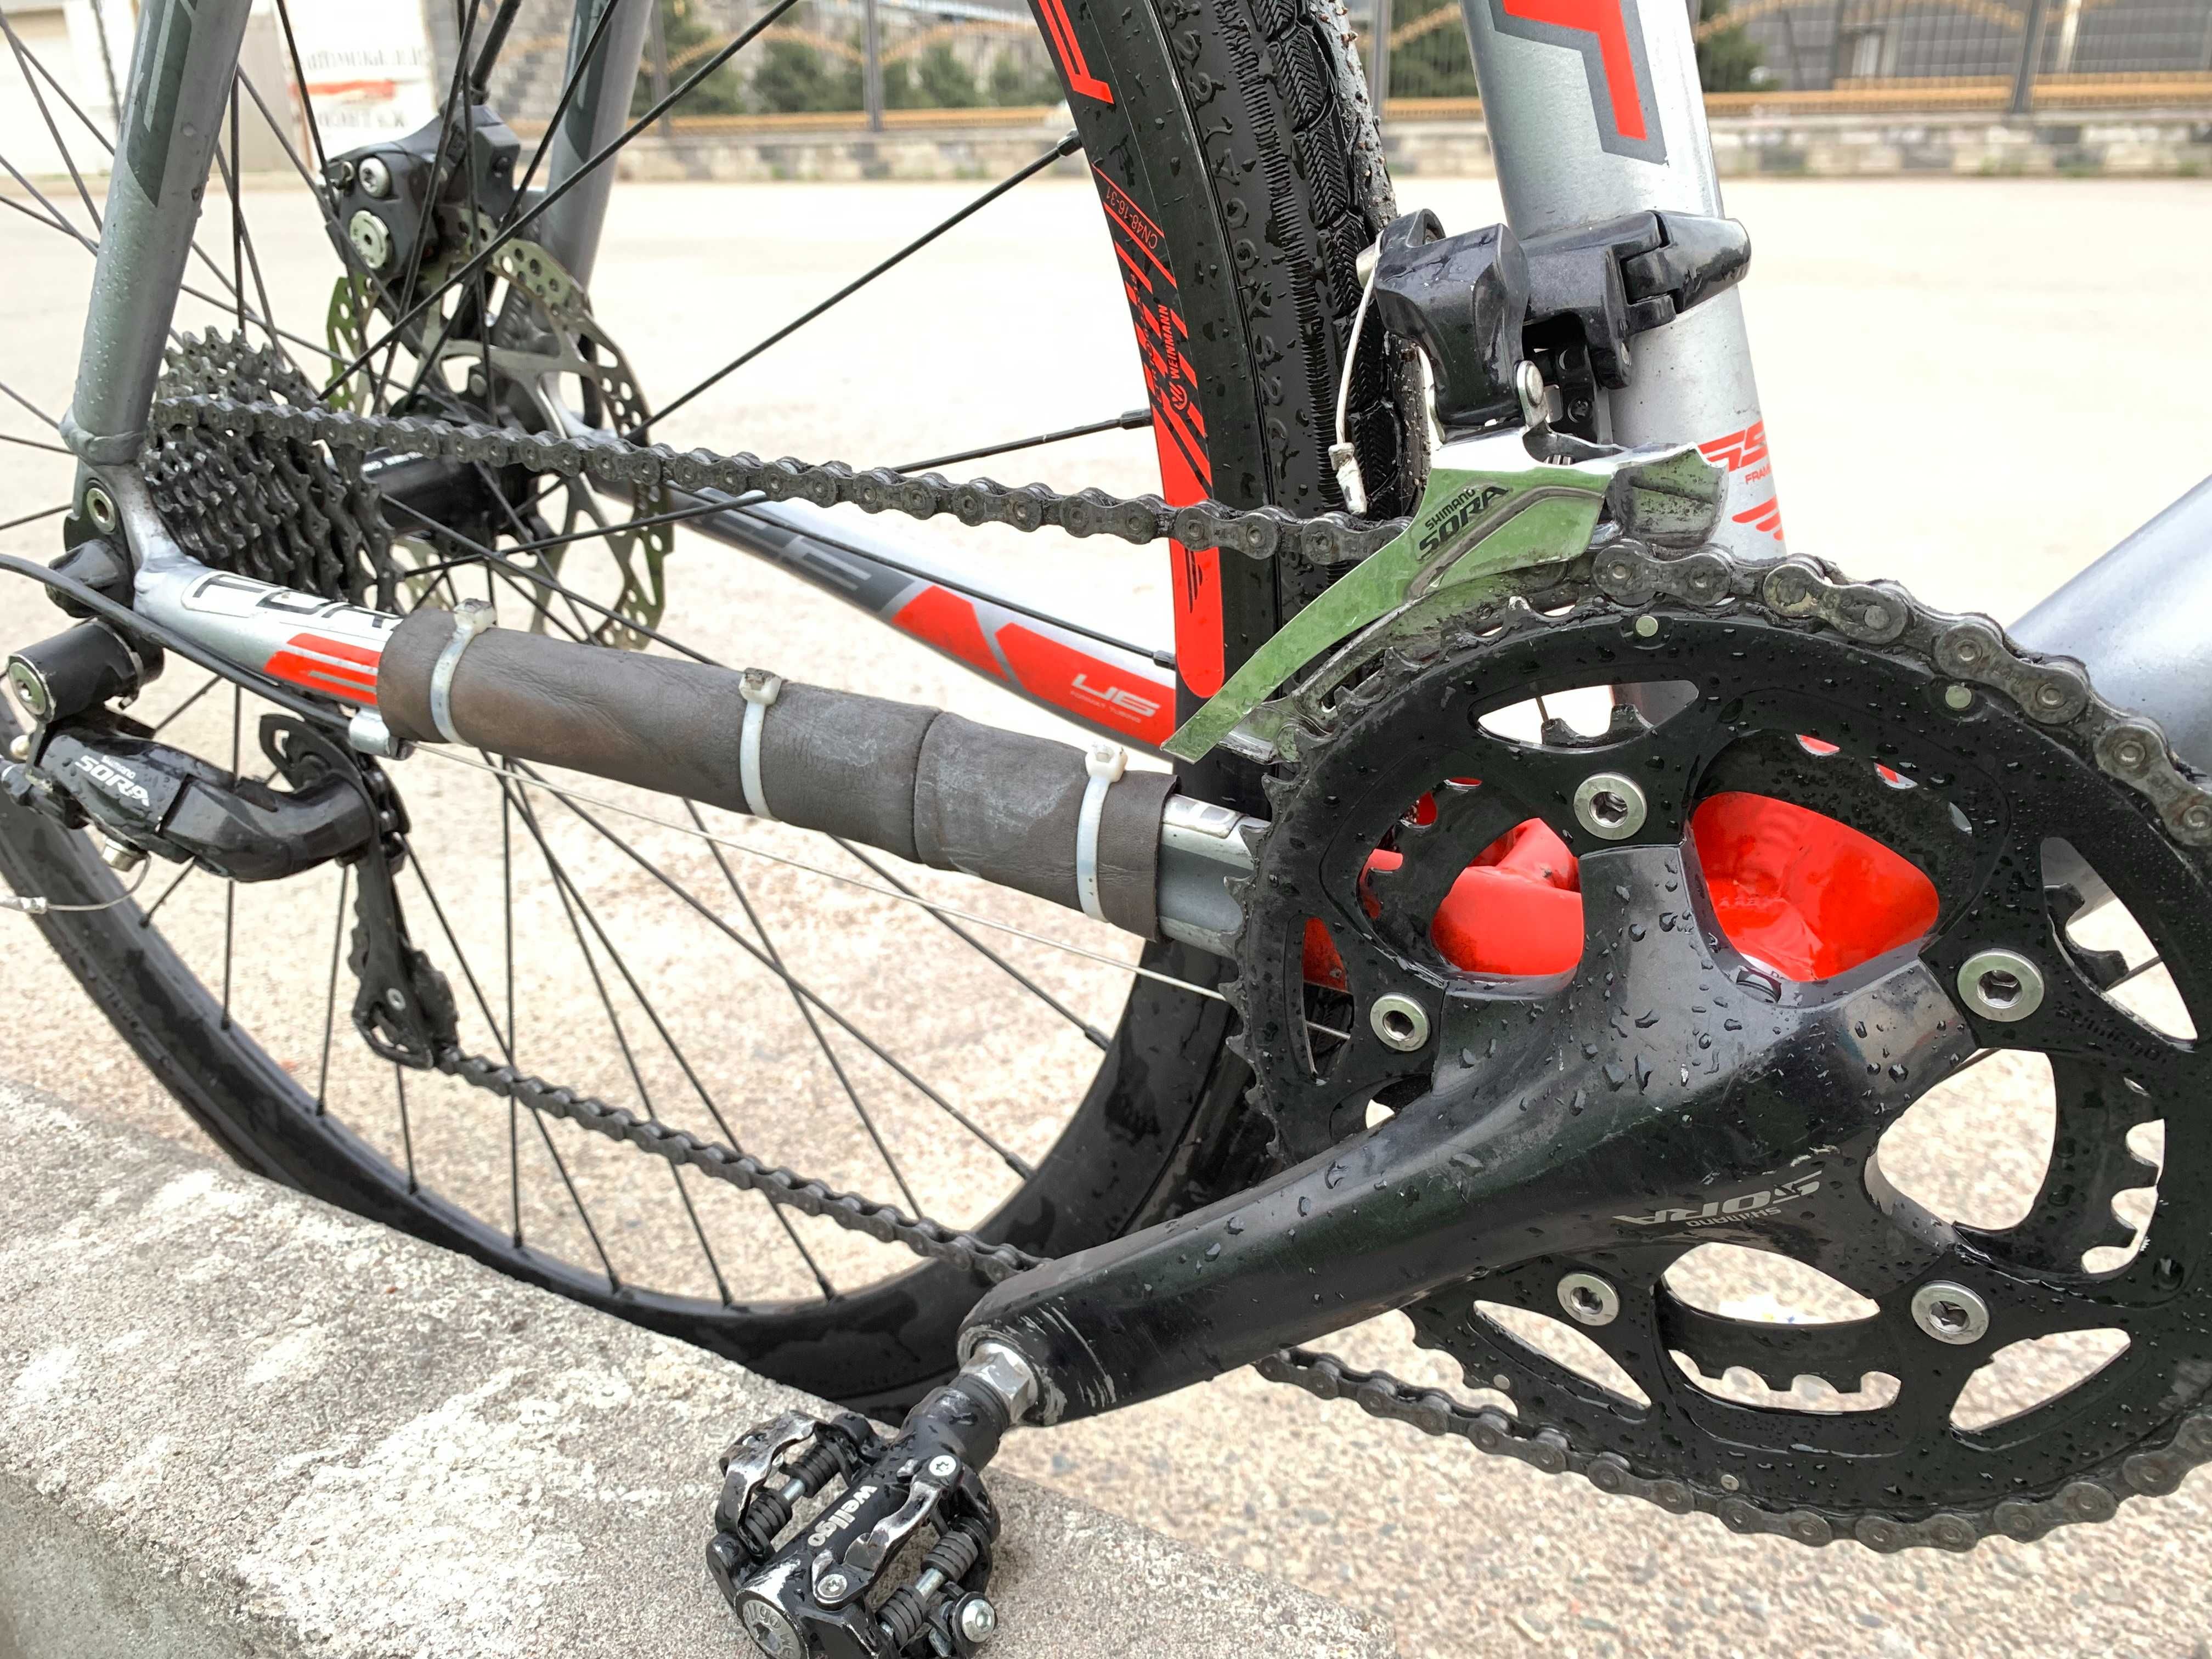 Шоссейный велосипед Format 2313 рост 550 мм 2016 серый/красный мат